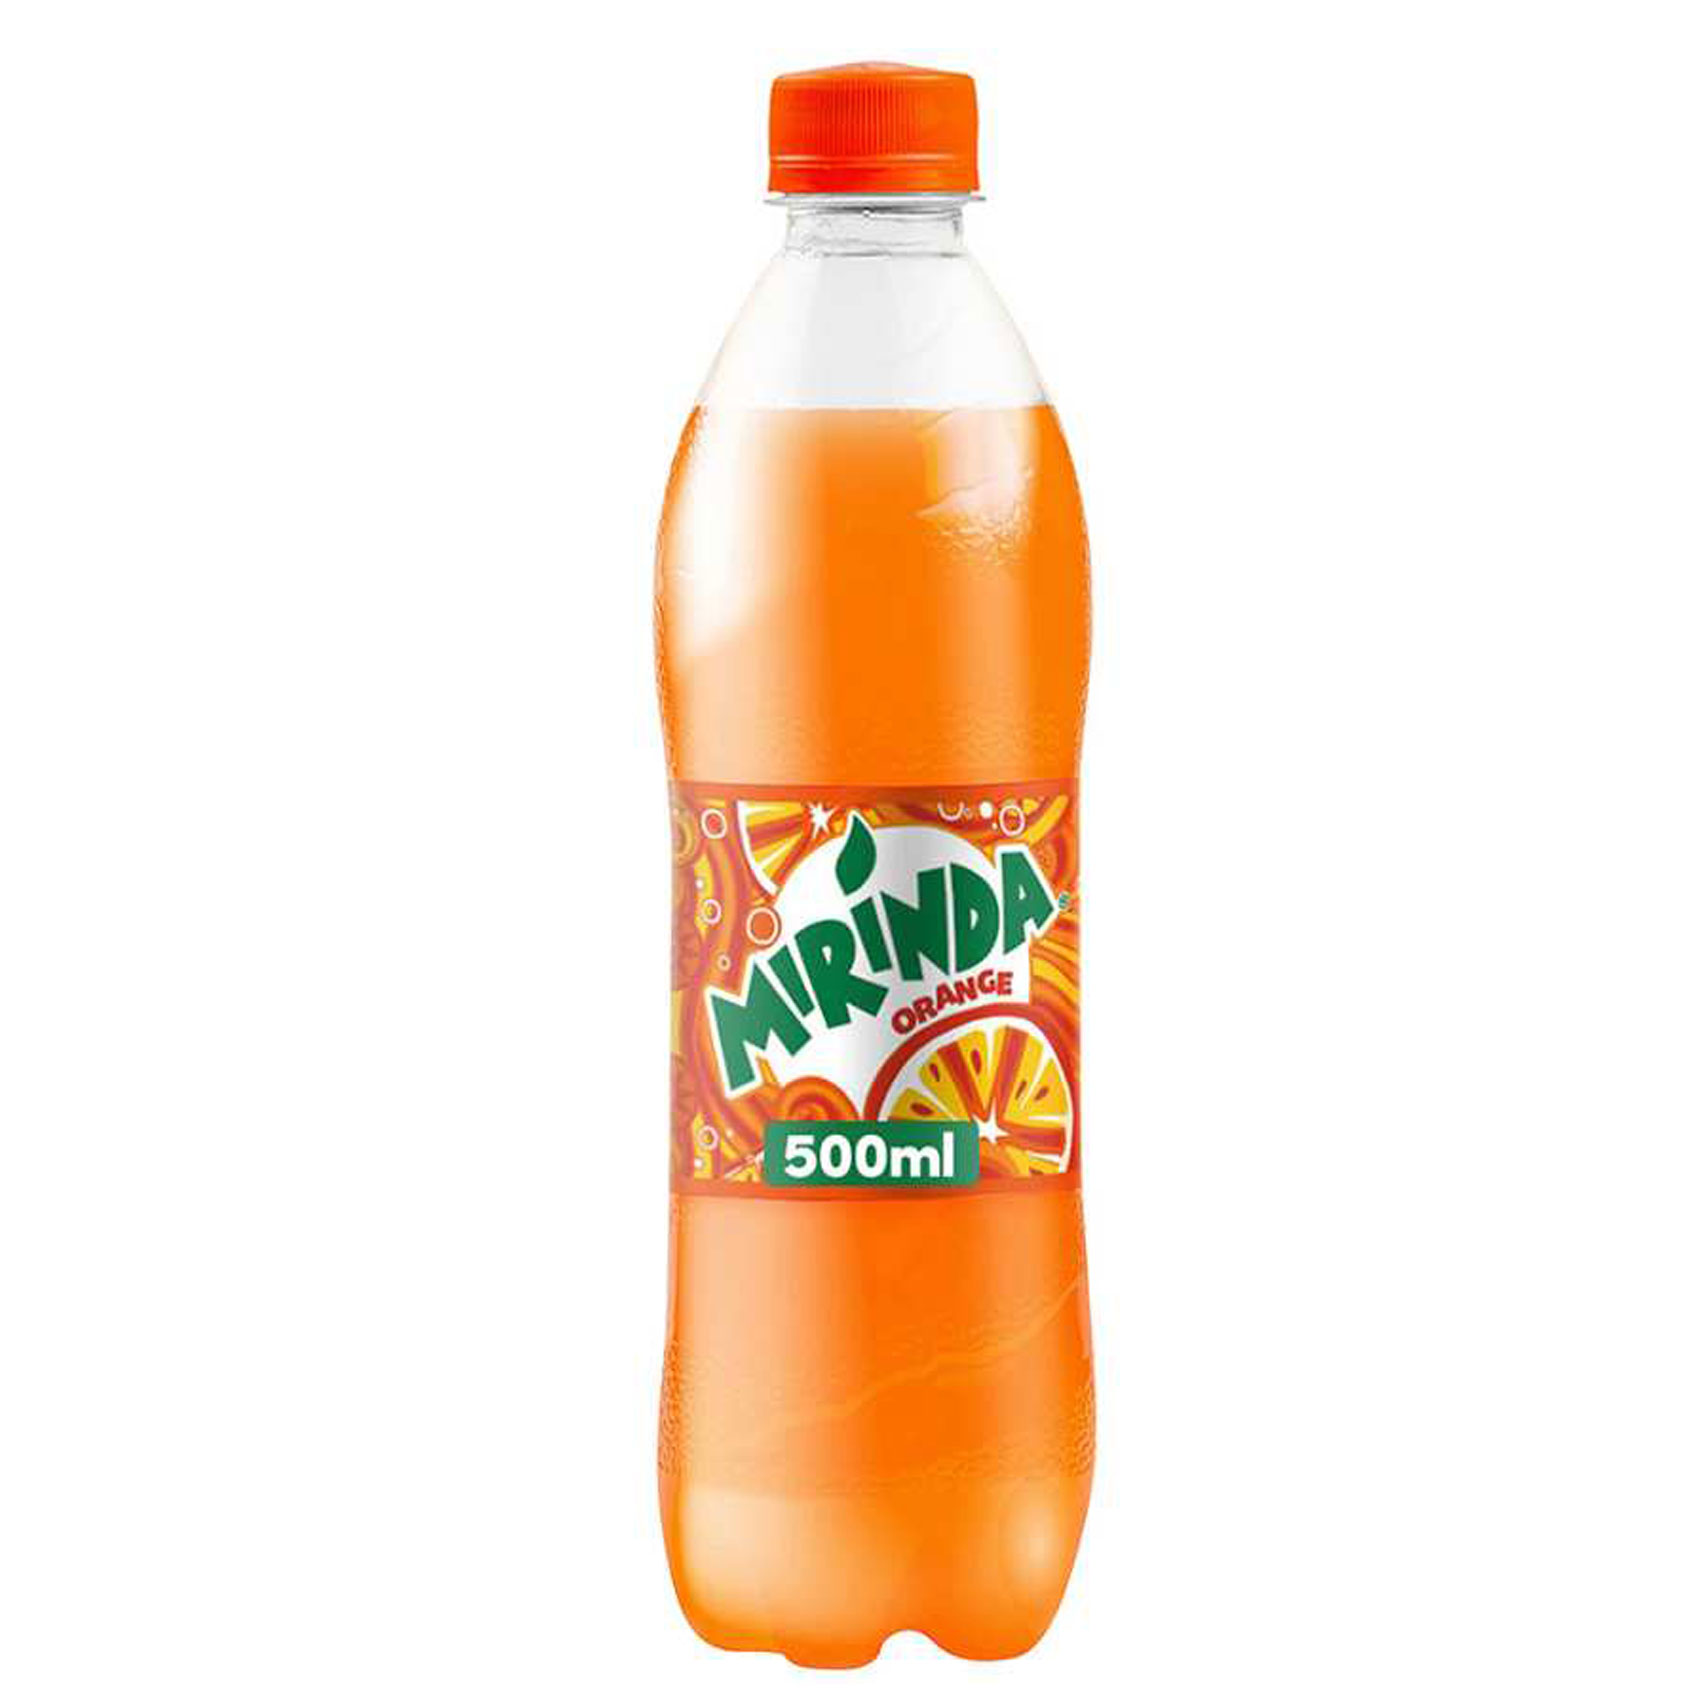 ميريندا مشروب غازي غير كحولي بنكهة البرتقال في قارورة بلاستيكية 500 ملل